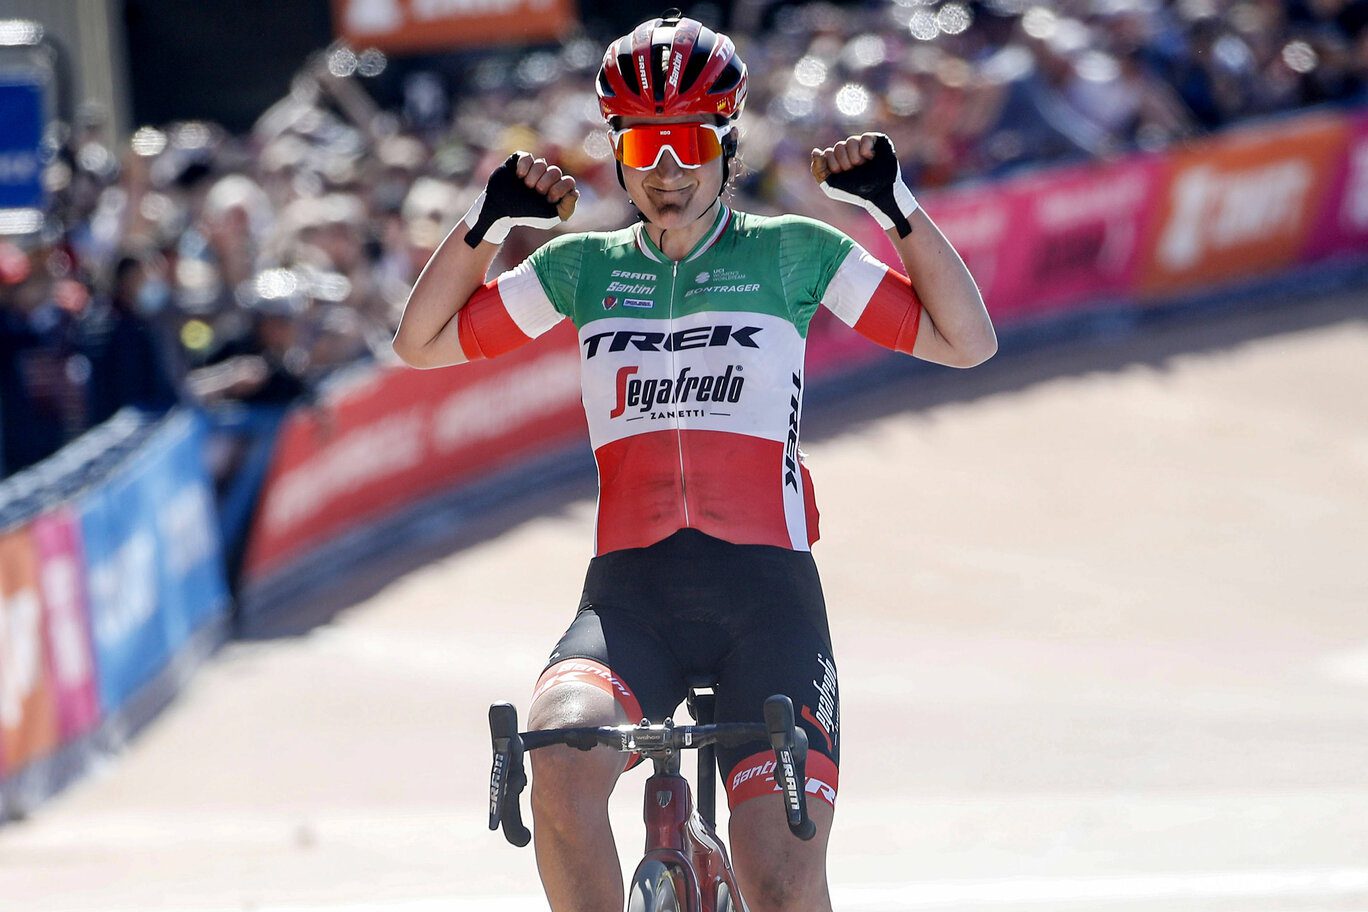 Trek keeps Paris-Roubaix Femmes title as Longo Borghini triumphs on the cobbles